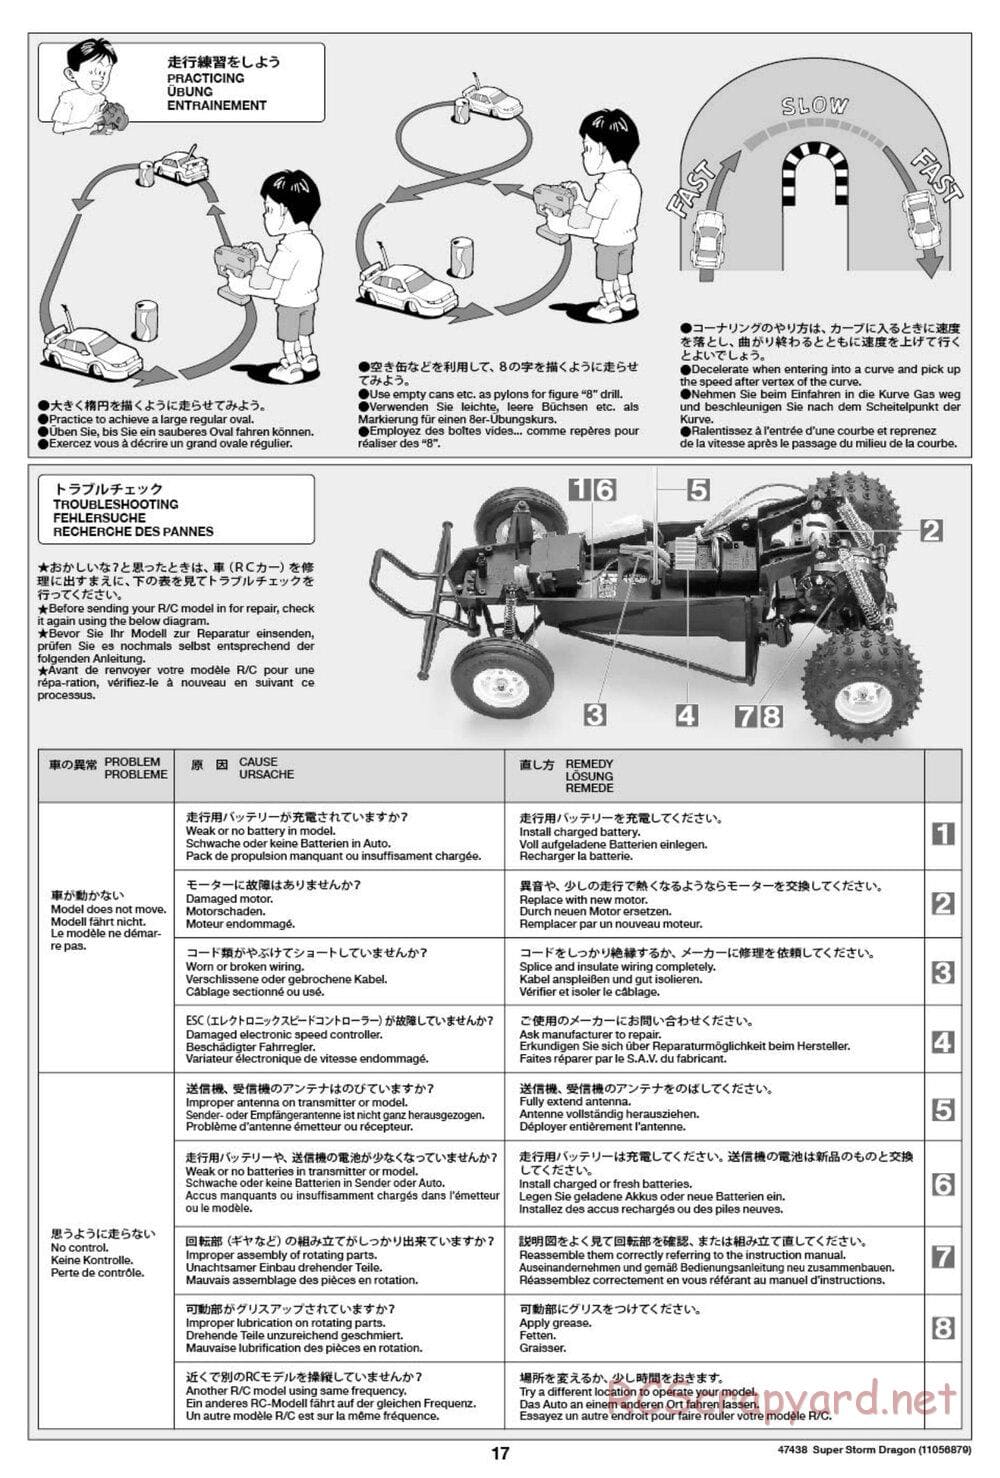 Tamiya - Super Storm Dragon Chassis - Manual - Page 17